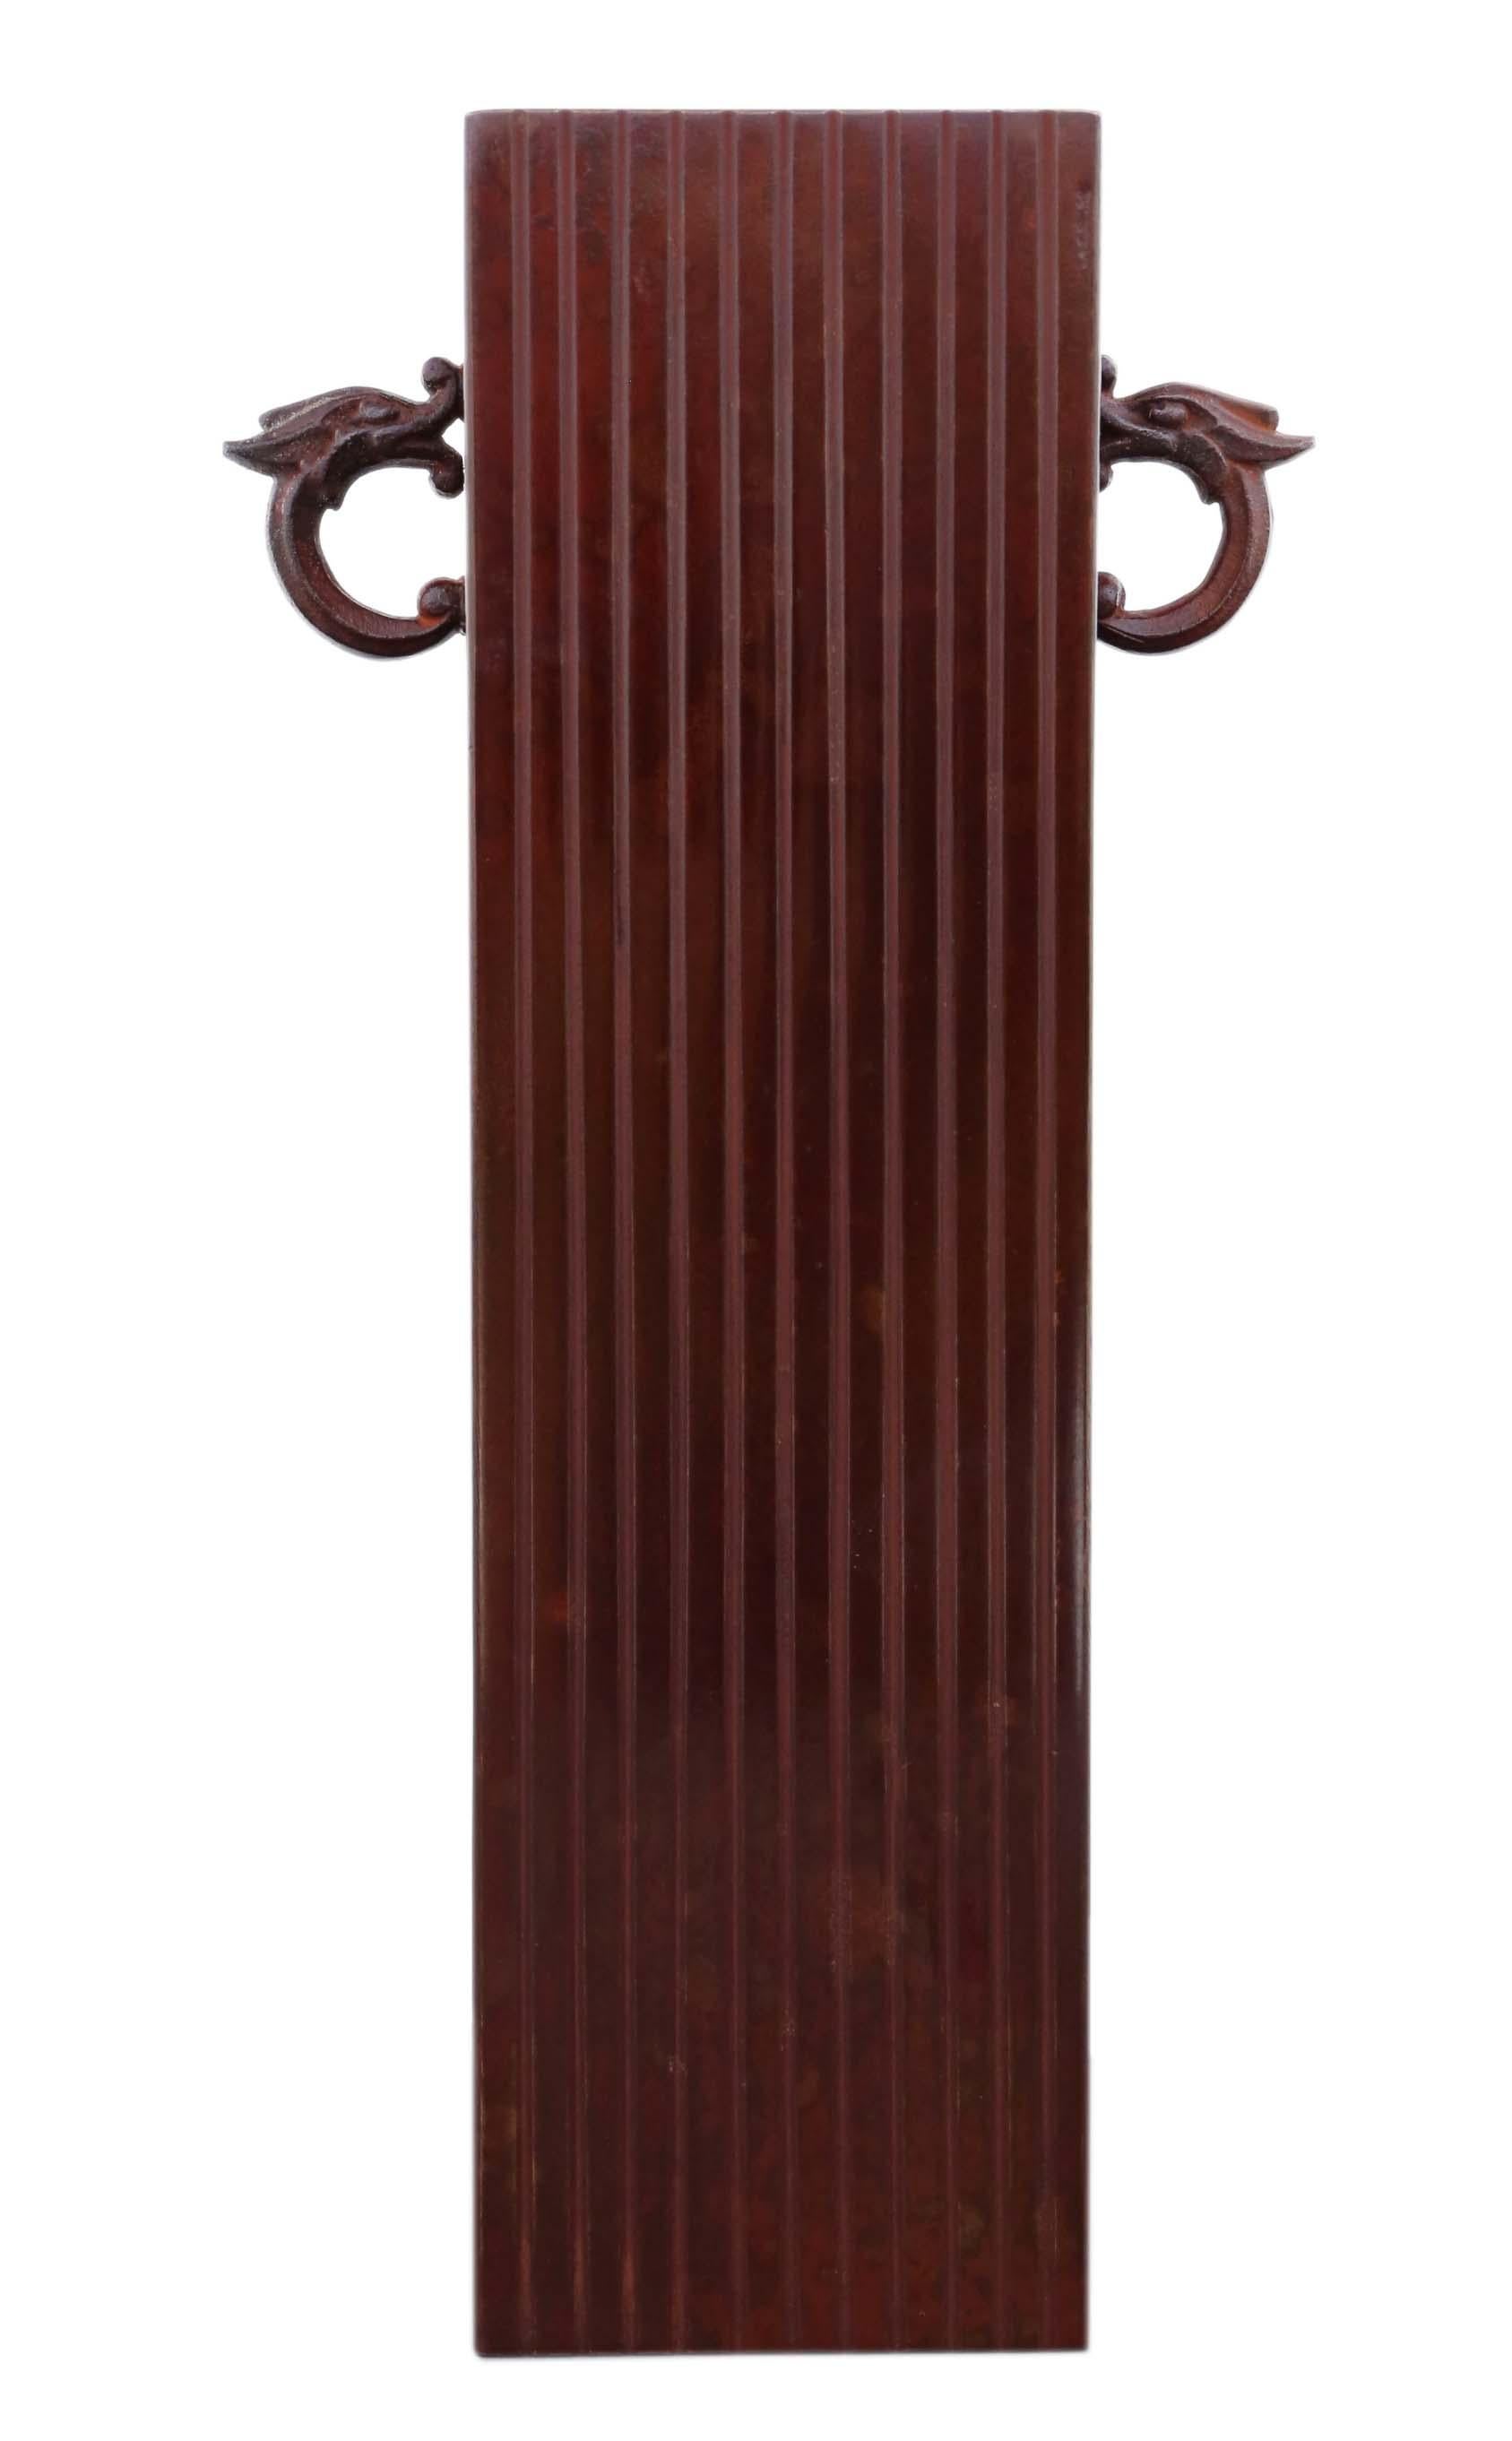 Antique vintage Oriental japonais grande qualité bronze minimaliste Kabin vase. Une pièce rectangulaire créée par l'artiste en 1950, dont le design est scellé par Hiramazu Hroharu. Pour un arrangement floral Ikebana.

Ce serait étonnant dans le